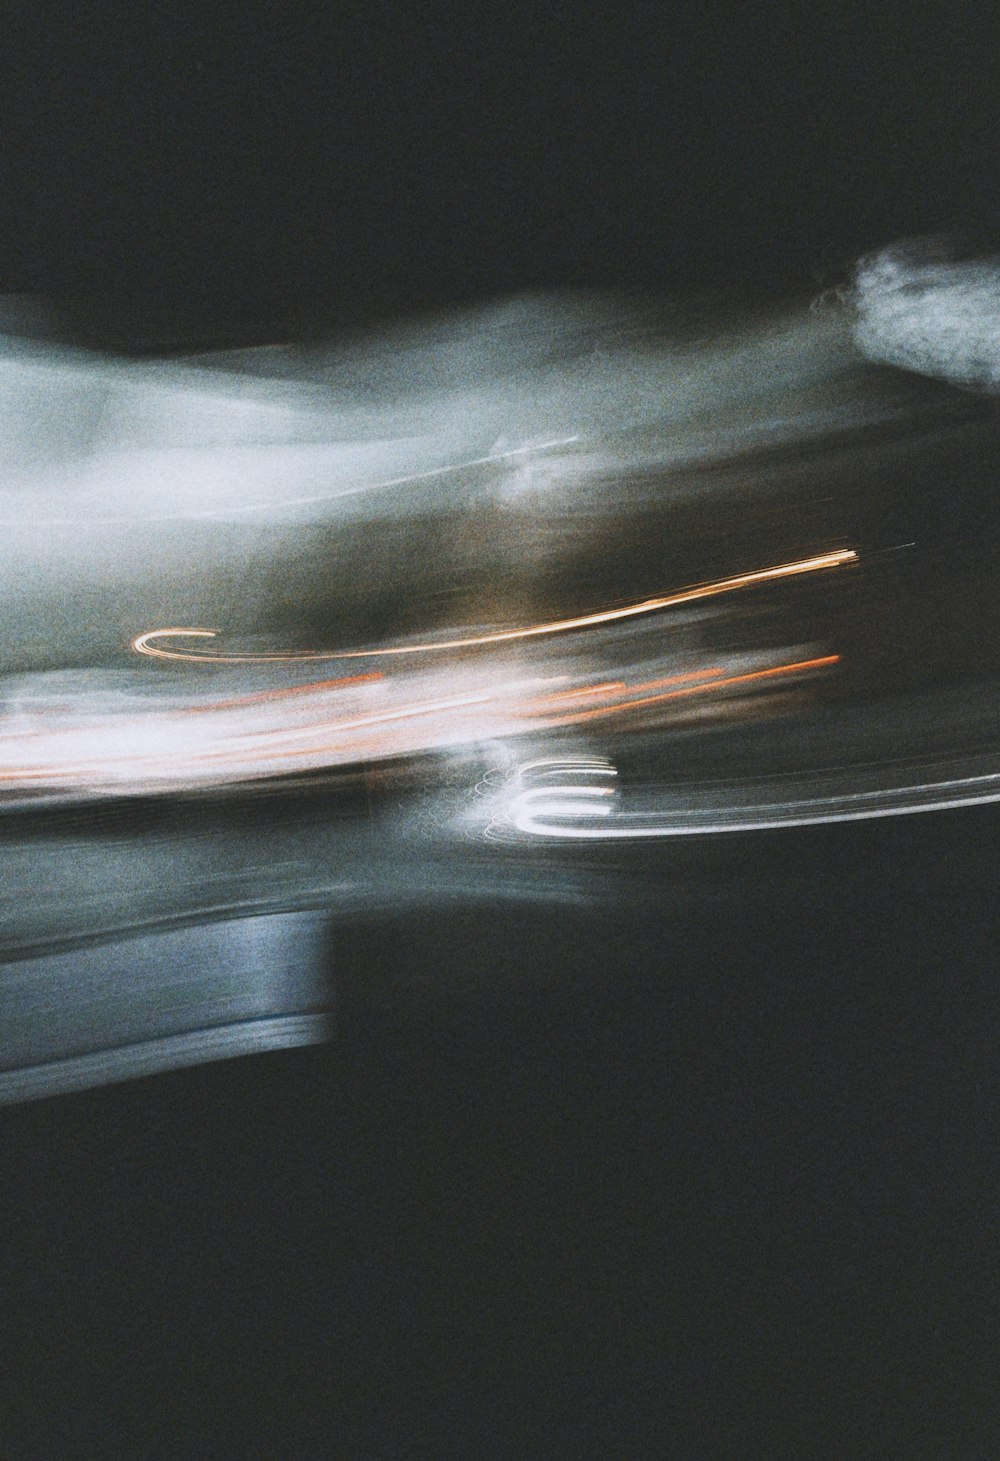 photographie en accéléré de voitures sur la route pendant la nuit